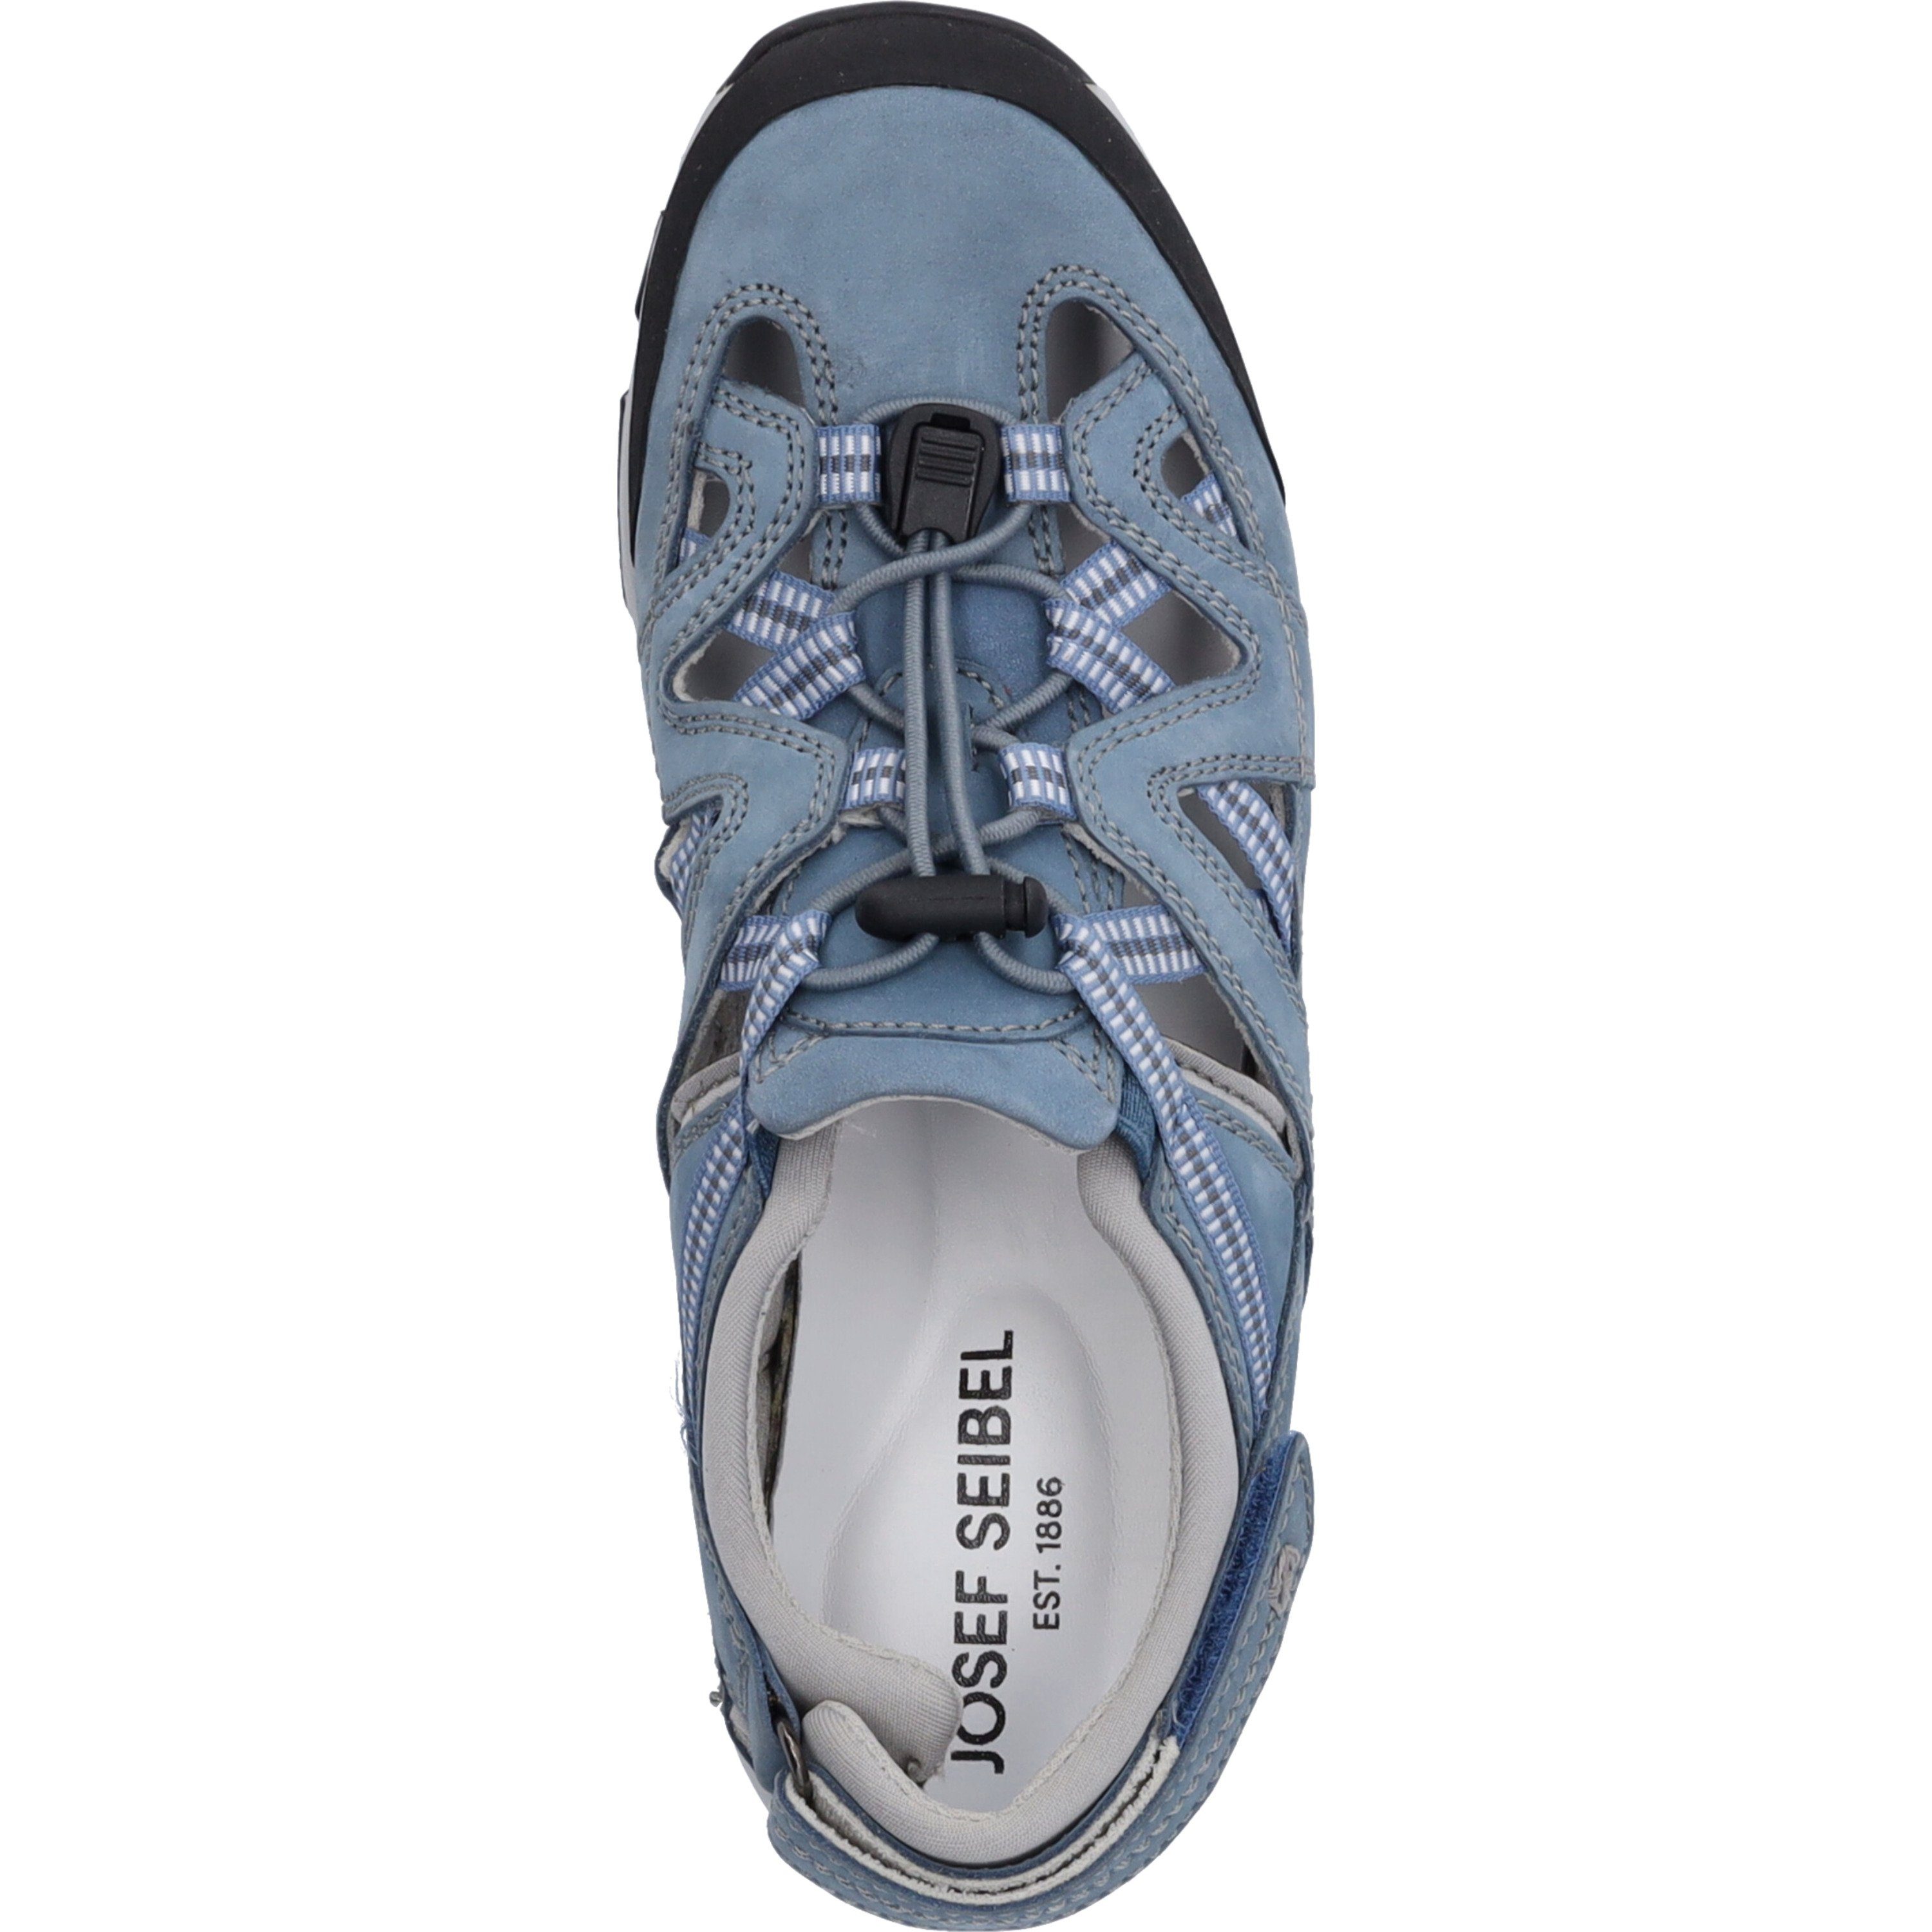 Noih blau Seibel Josef 11, Sneaker